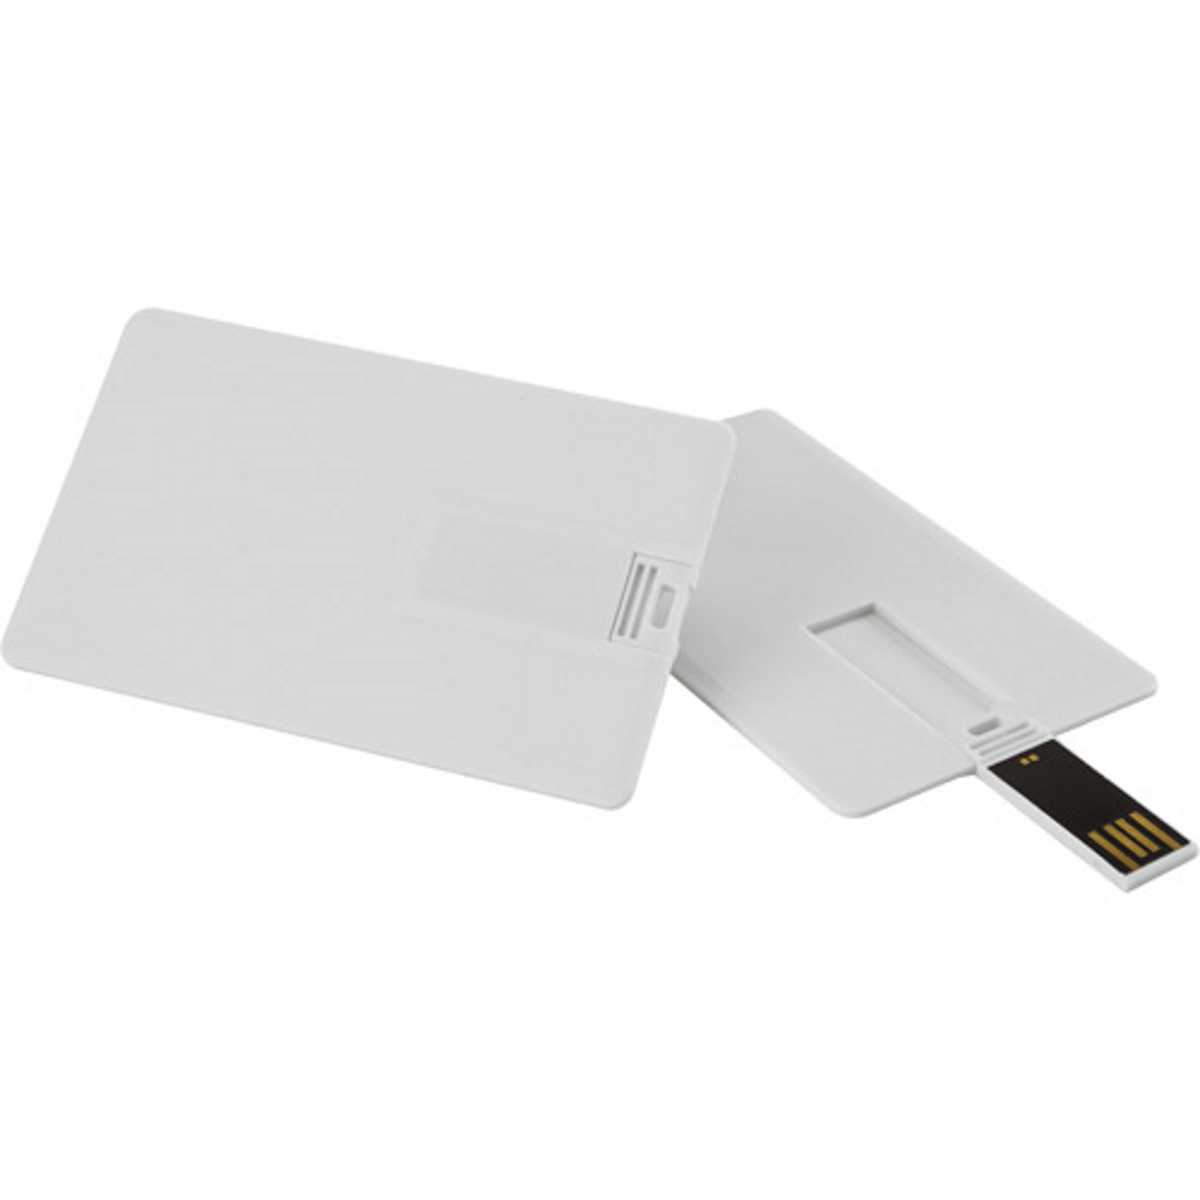 ® USB USB-Stick (Weiss, GB) Kreditkarte 32 GERMANY